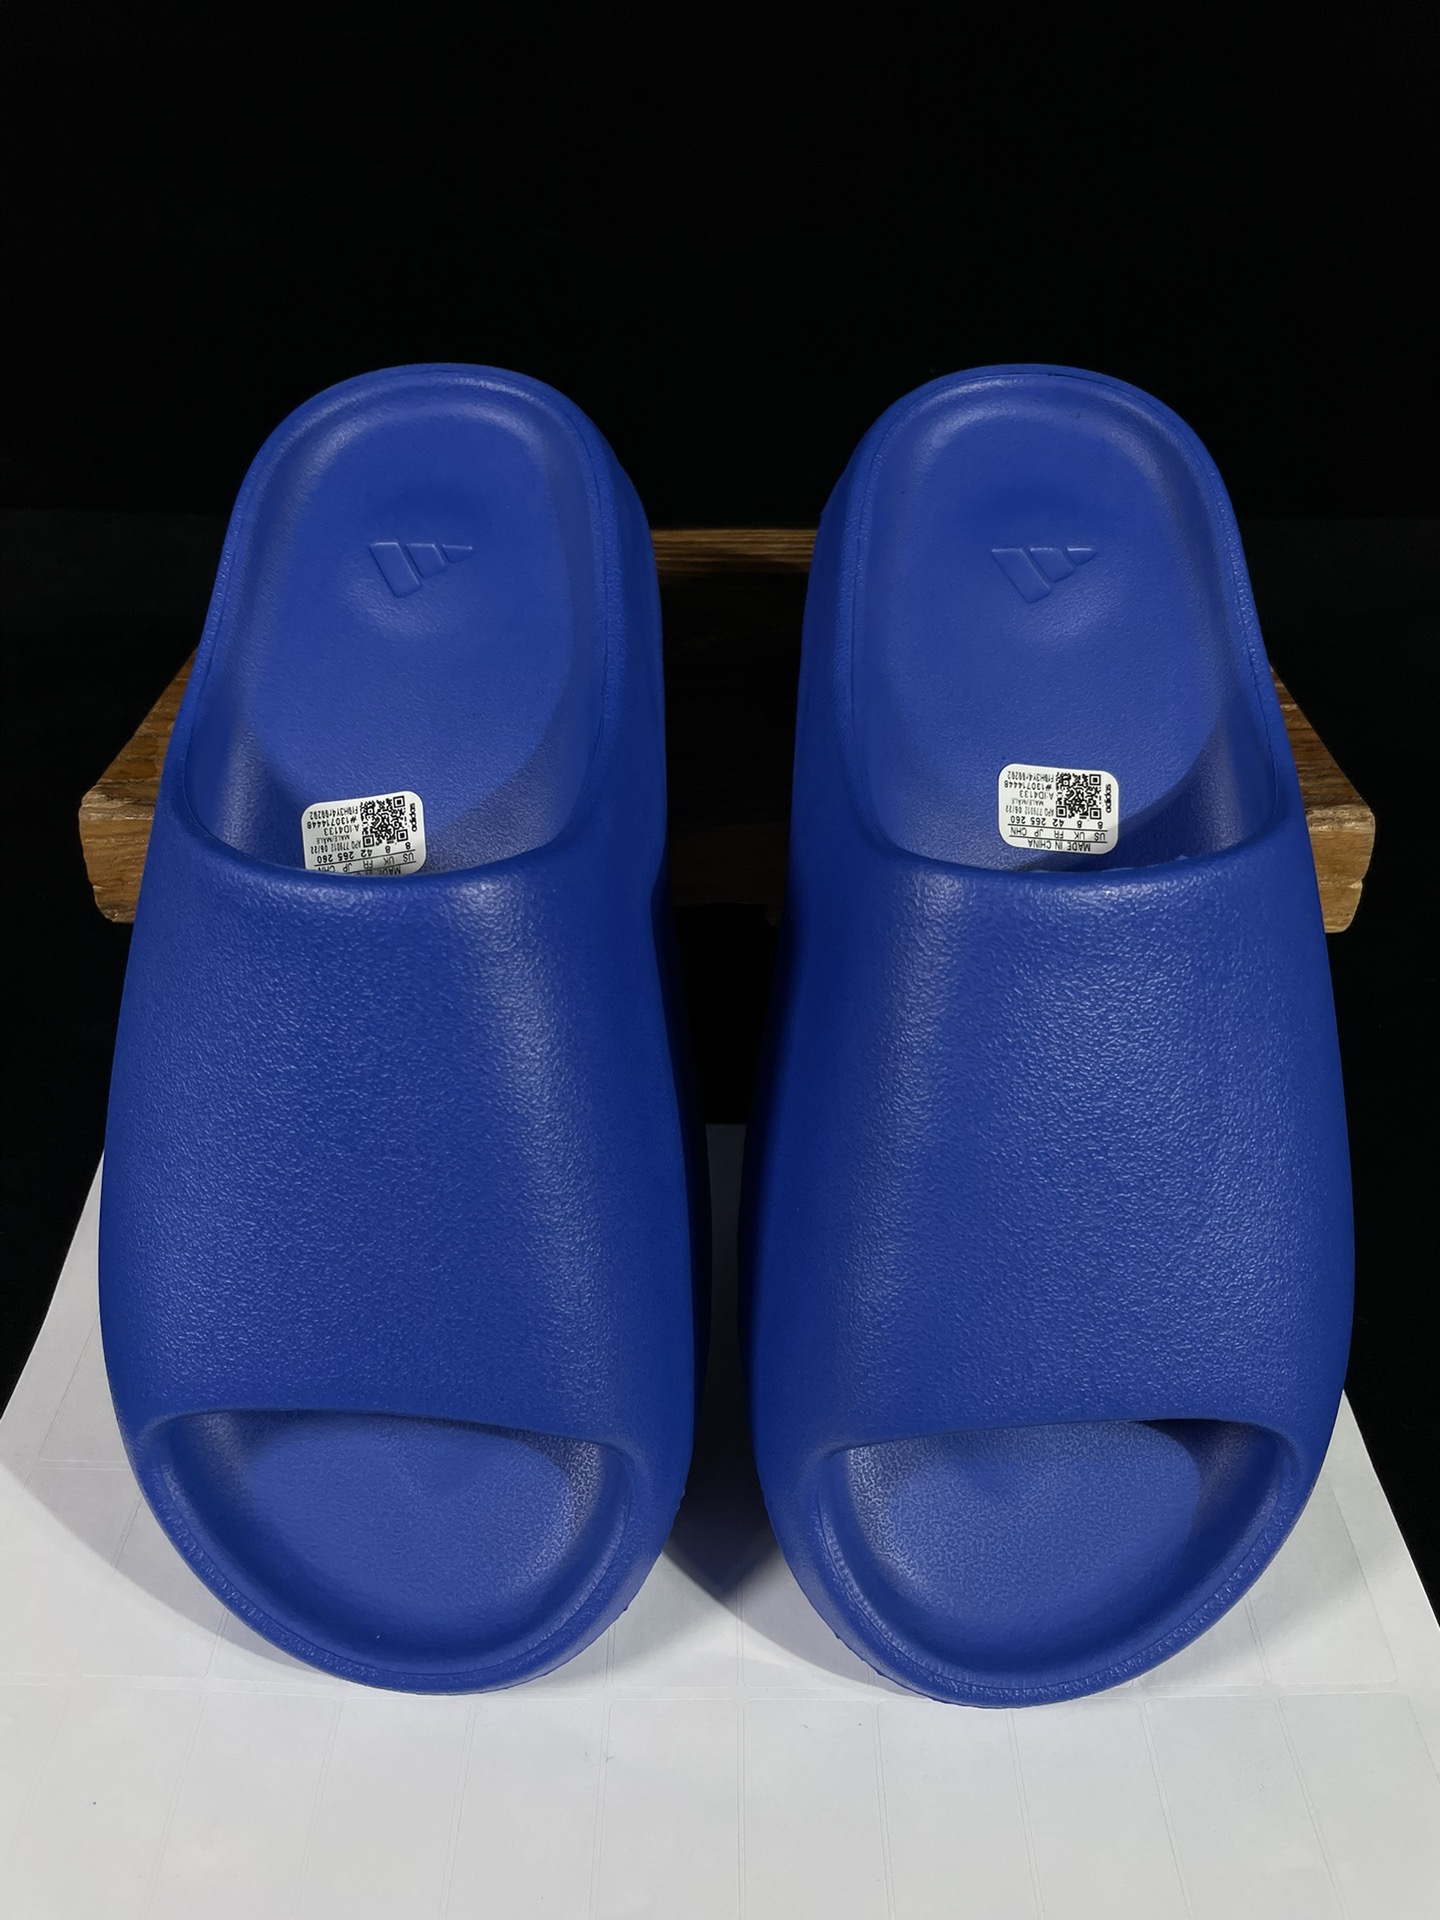 椰子拖鞋克莱因蓝雾面ID4133夏季硬通货外贸大厂出品！比市面之前所有版本都要略好尺码37383940.